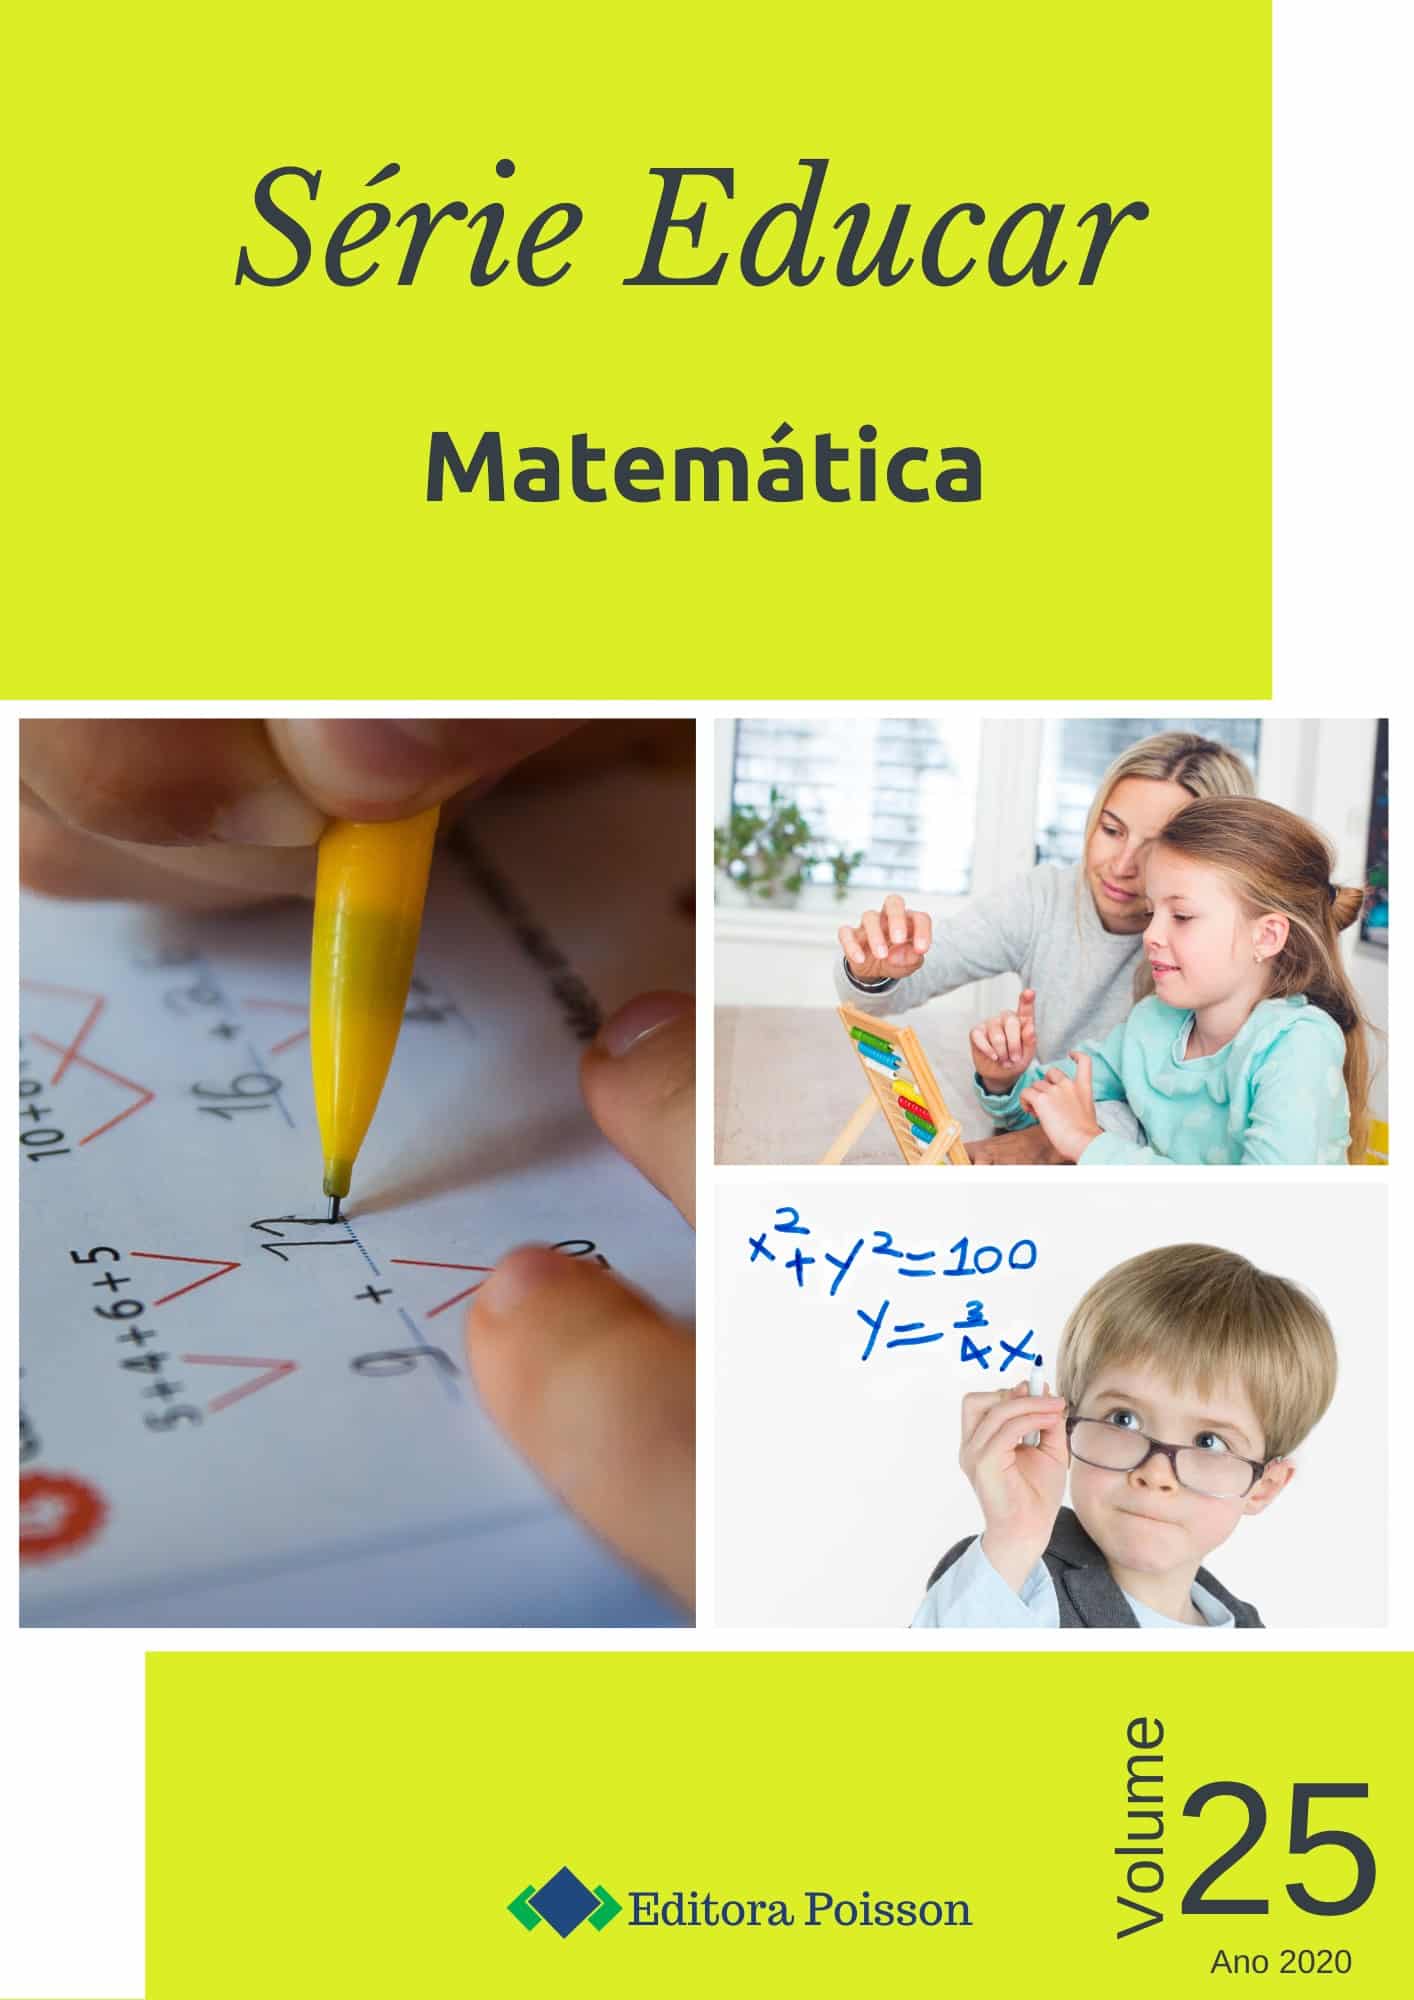 Jogos Matemáticos para o Ensino Médio - Luciana Lima